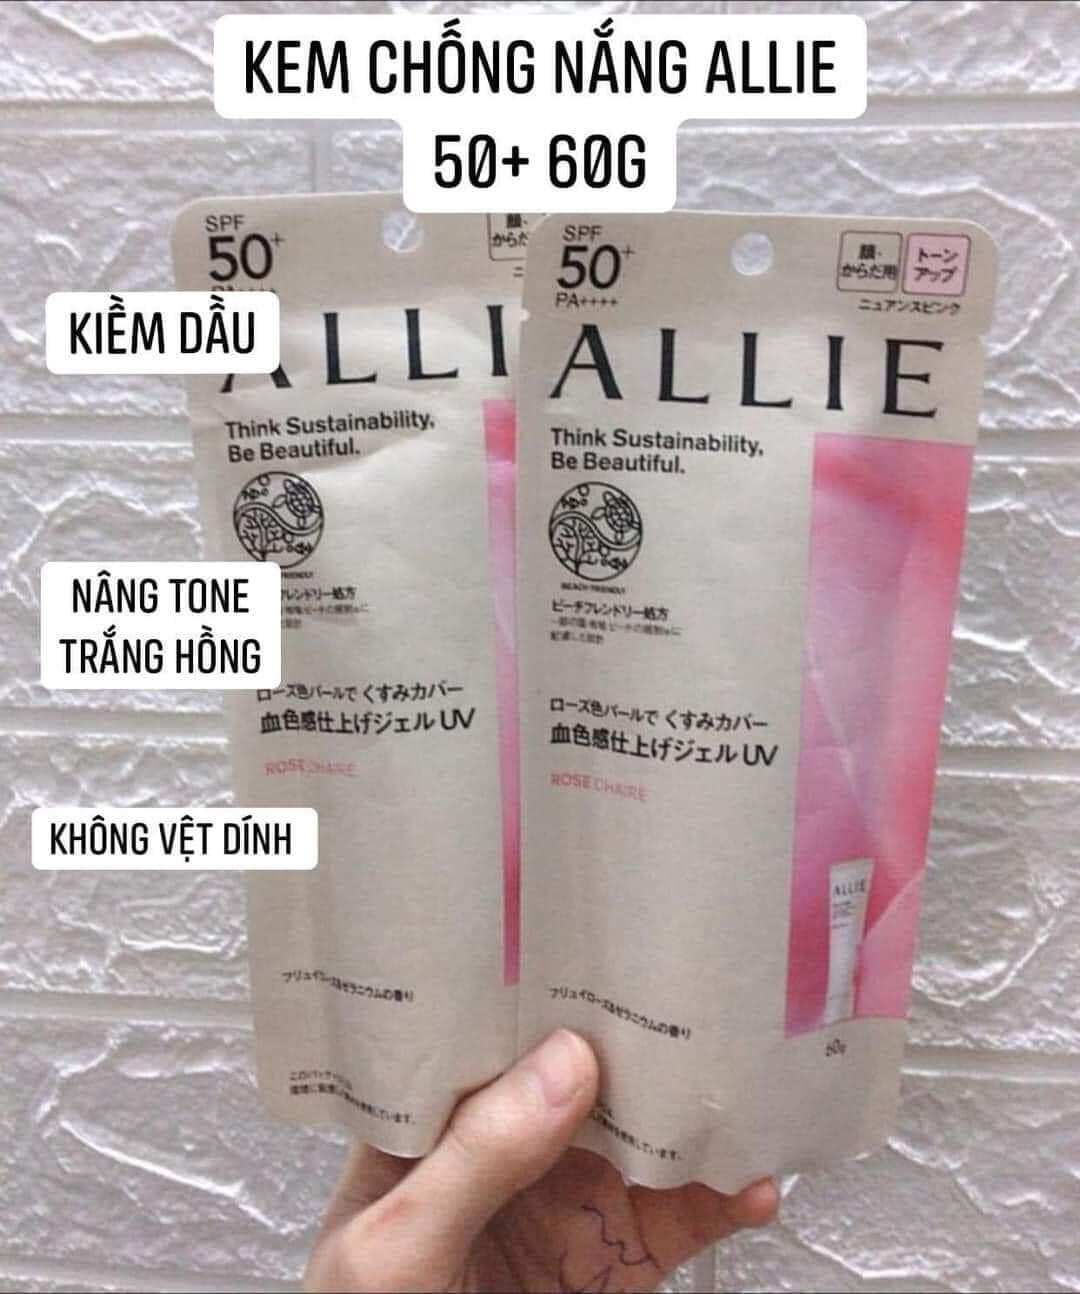 Kem chống nắng nâng tone Allie hồng 60g Nhật chuẩn nội địa chính hãng